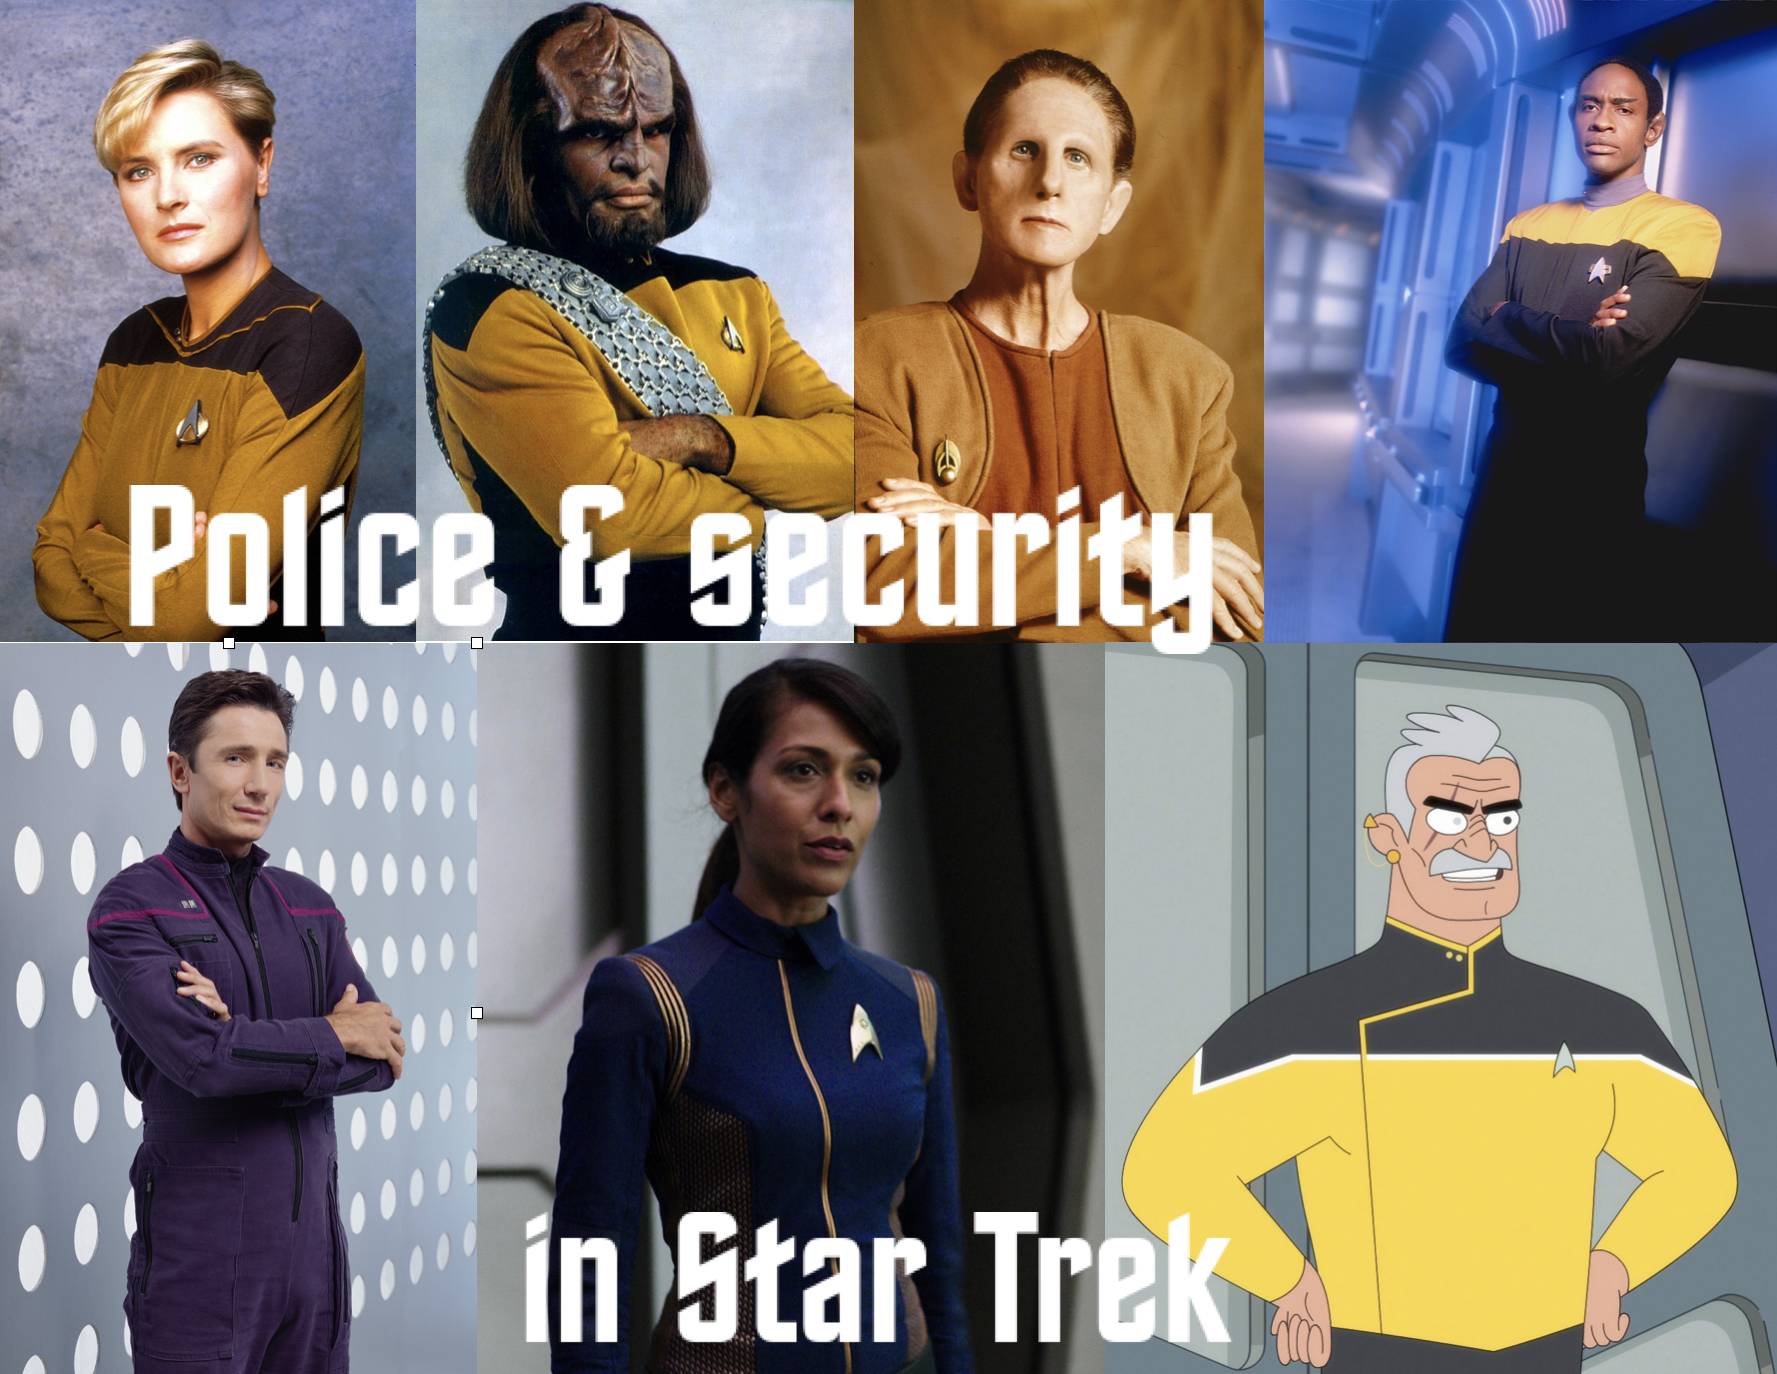 Police & security in Star Trek